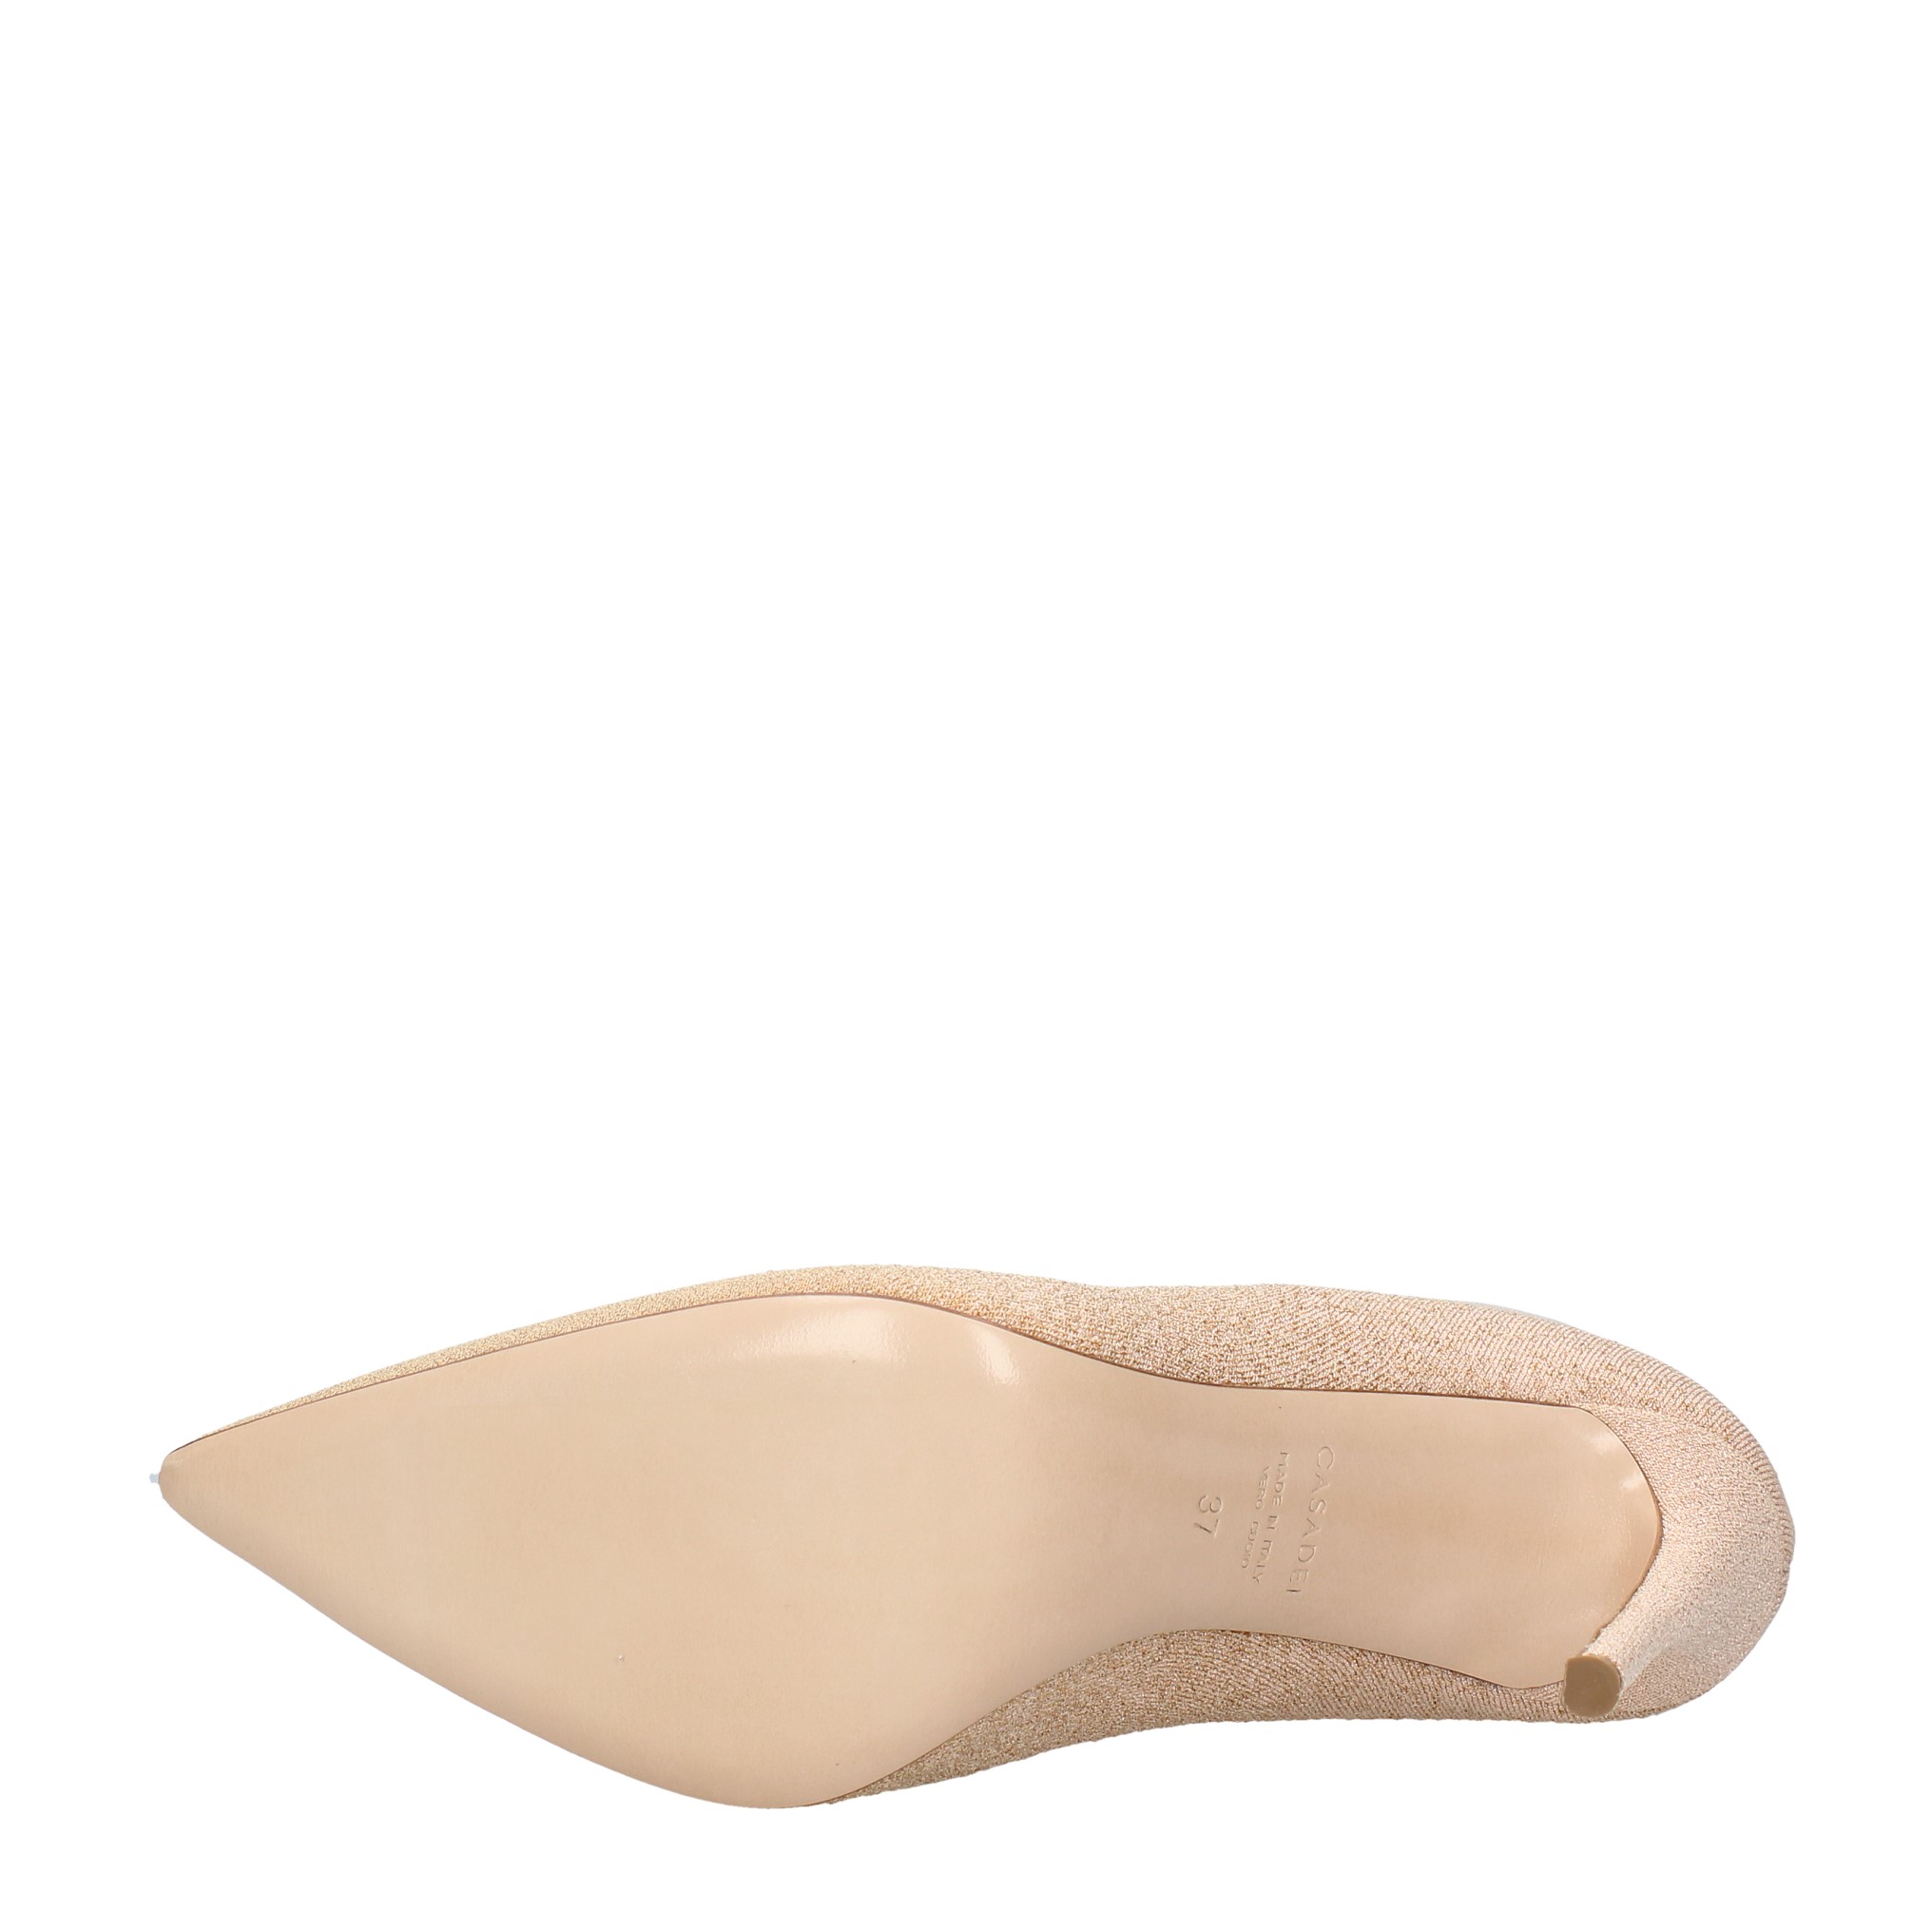 Tronchetti in tessuto elasticizzato - CASADEI - Ginevra calzature